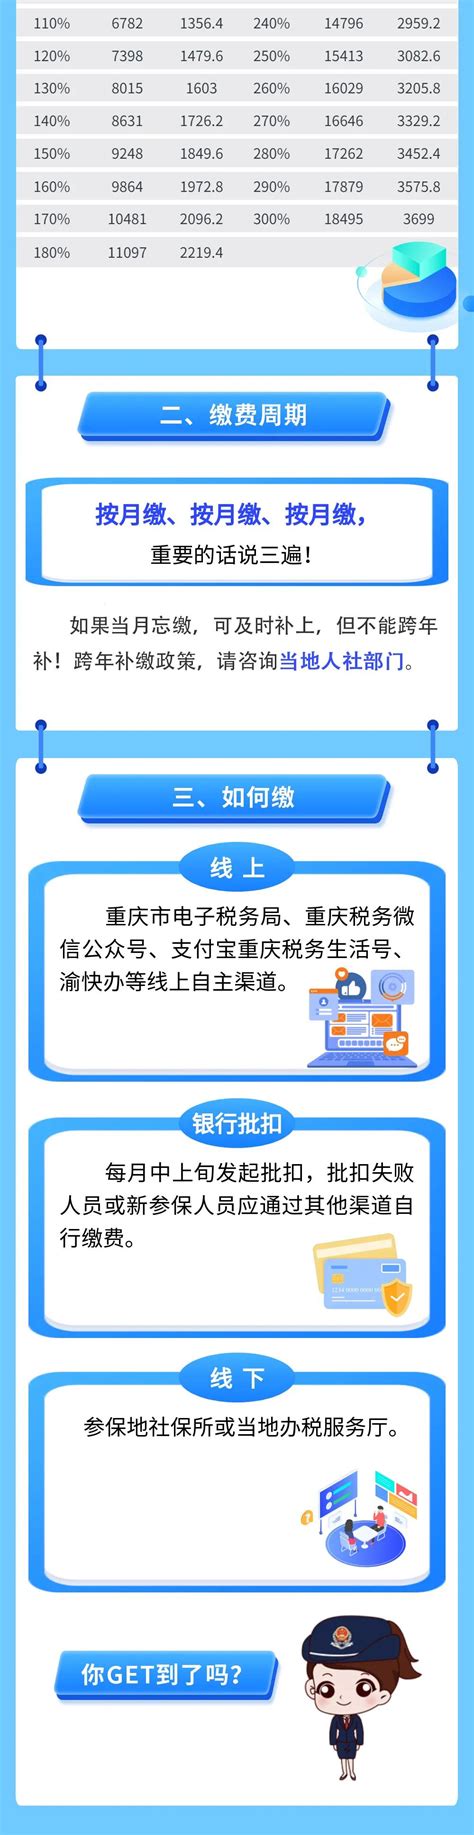 青海省2021年度灵活就业人员社保缴费标准明细表